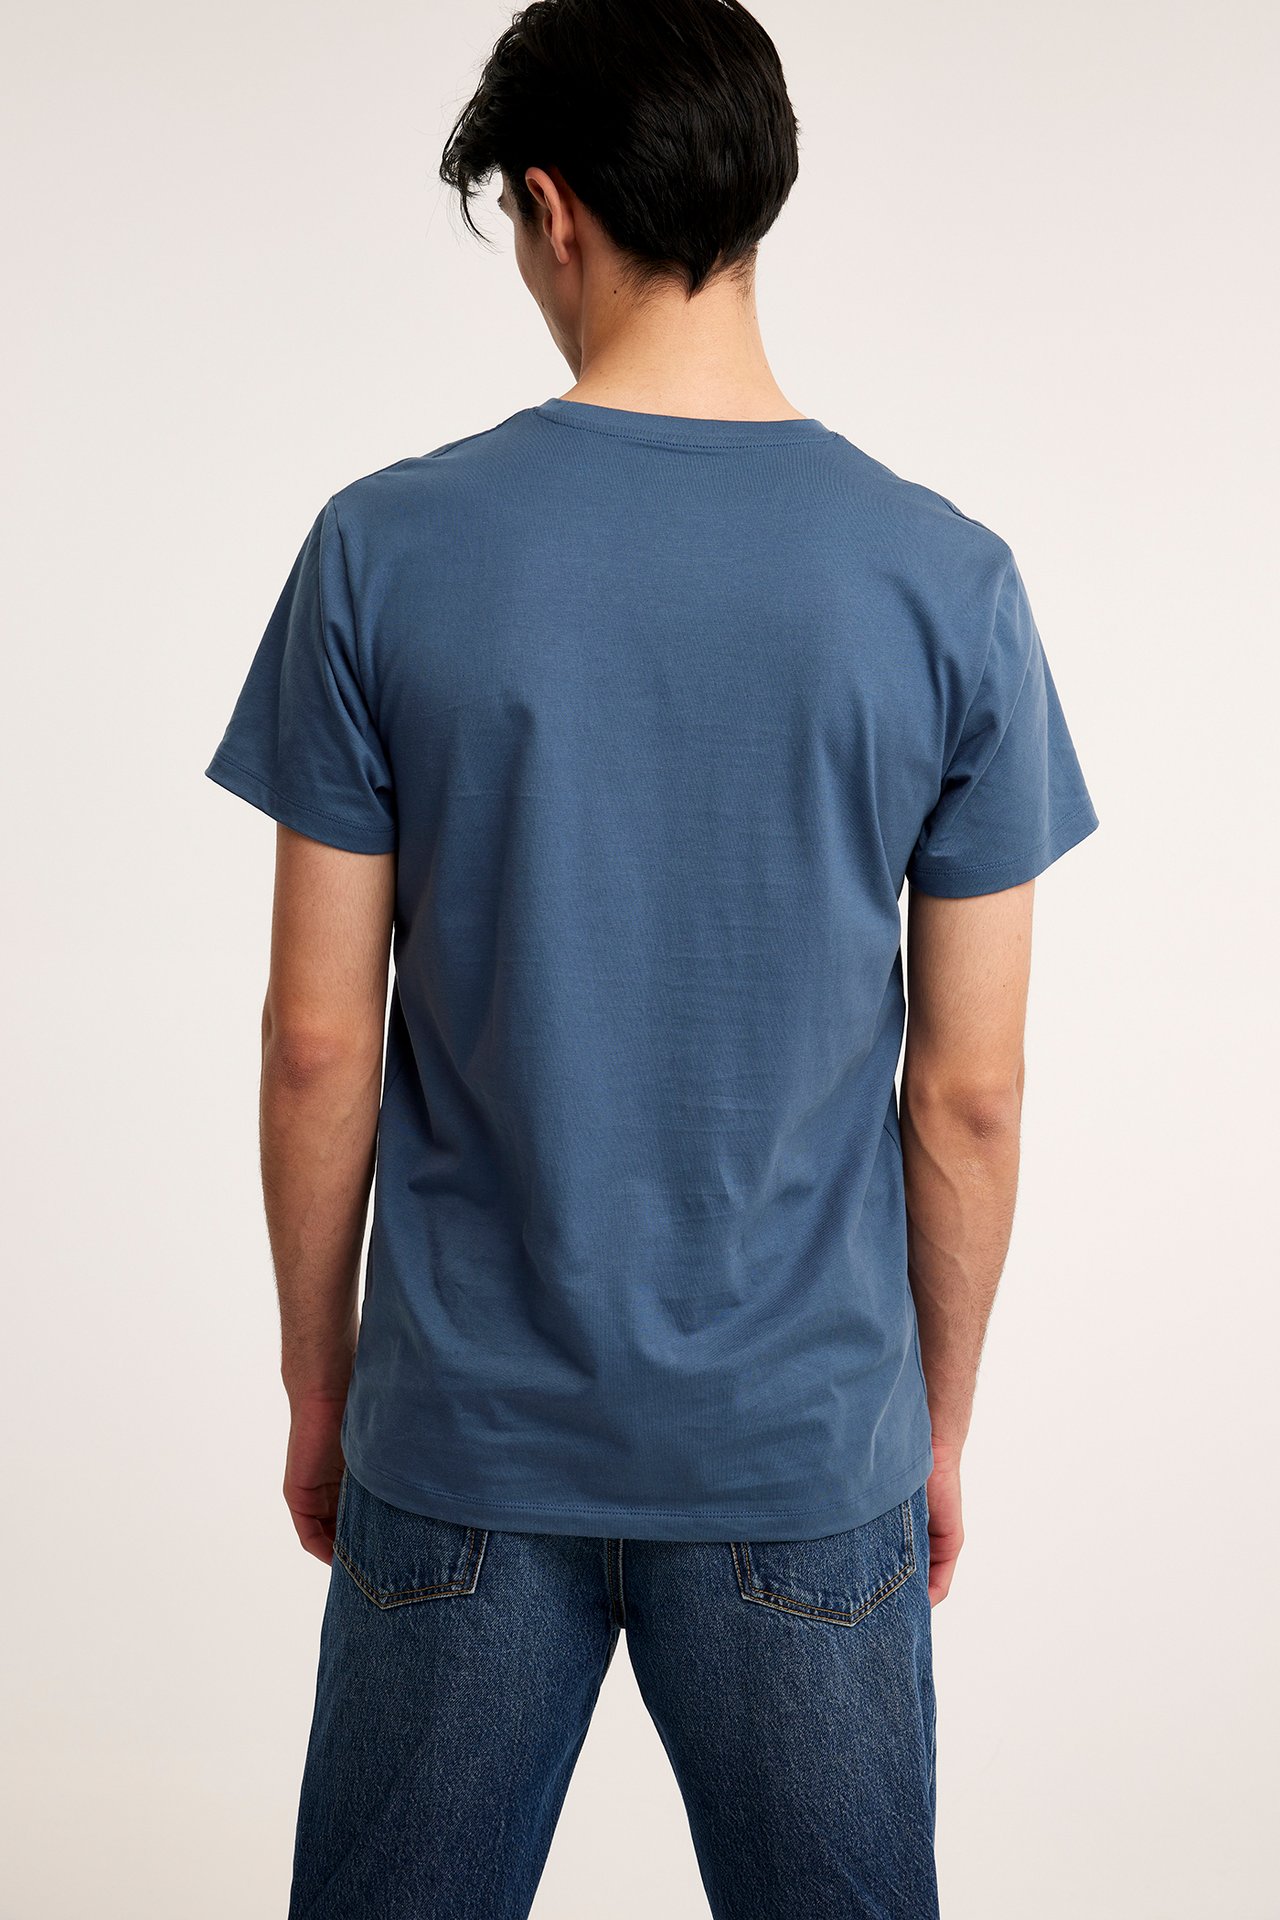 T-paita, jossa pyöreä pääntie - Tummansininen - 3